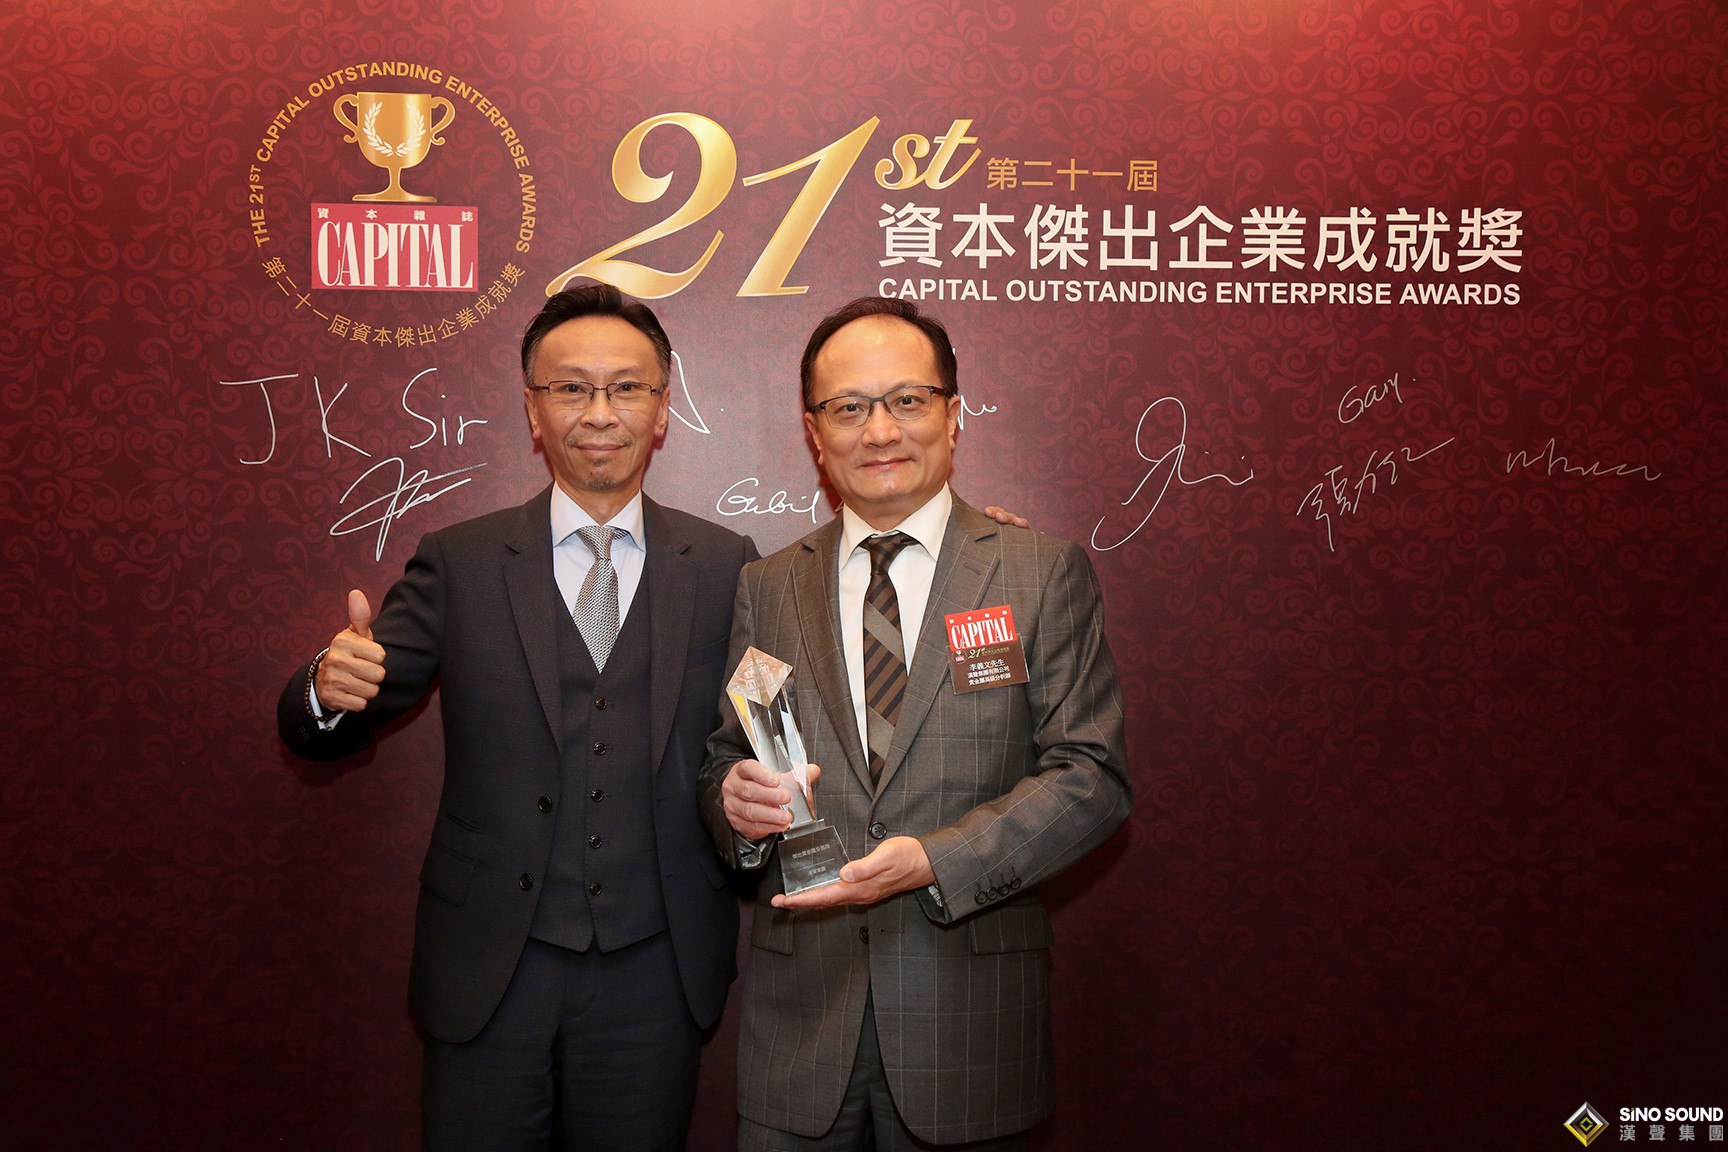 汉声集团荣获“第二十一届资本杰出企业成就奖”